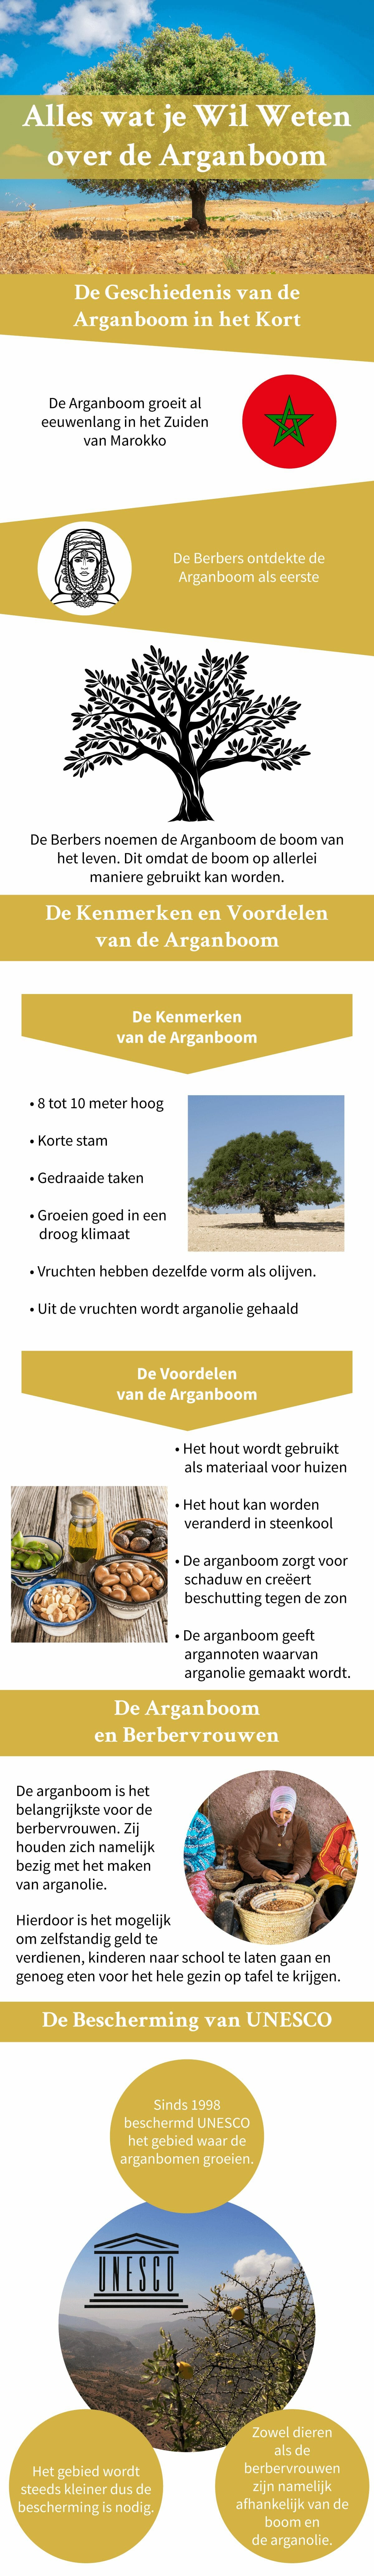 Arganboom in beeld infographic